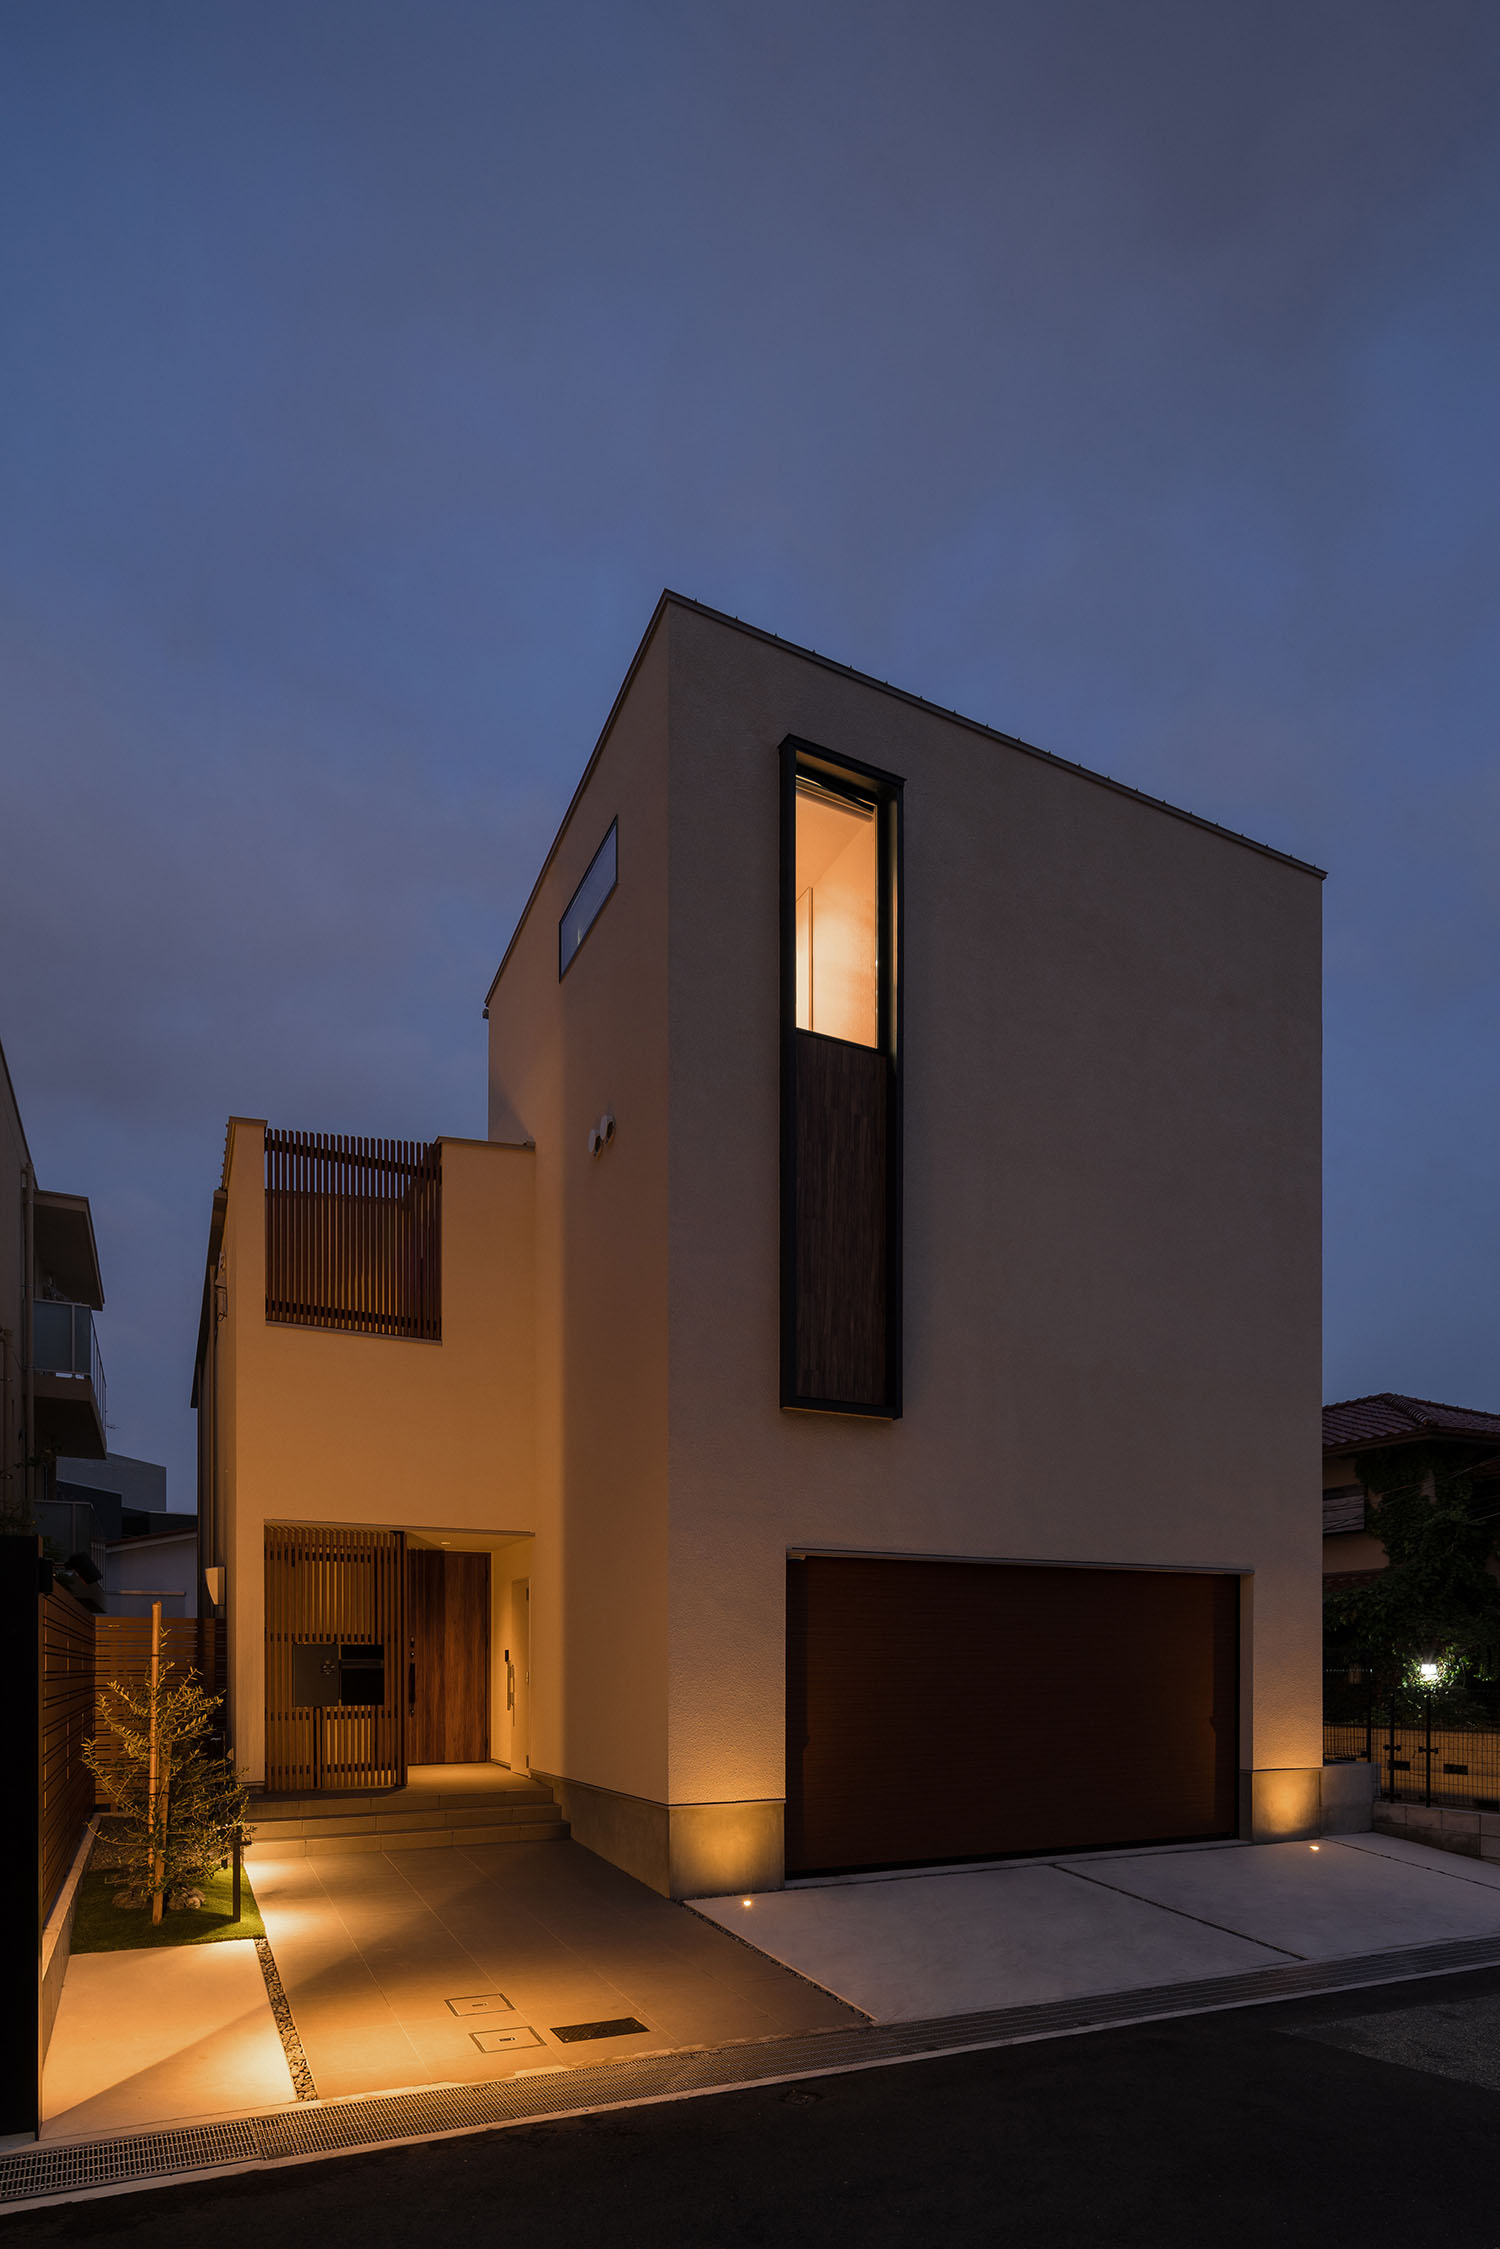 屋外照明によって玄関アプローチが照らされる住宅の外観・デザイン住宅